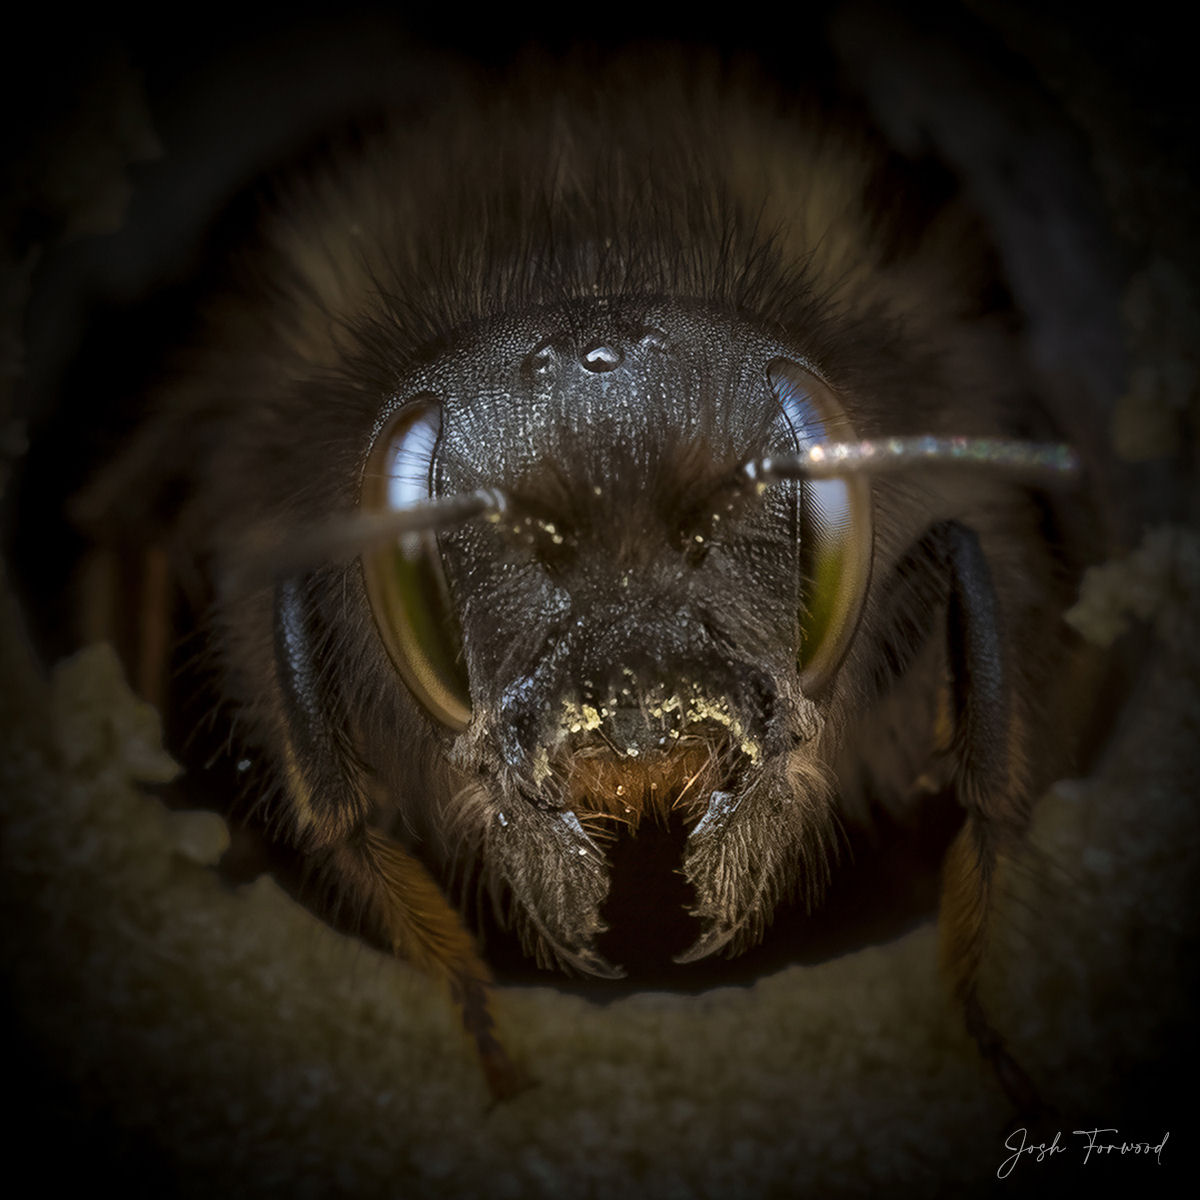 Retratos em close-up evidenciam os traços especialmente diversos das abelhas